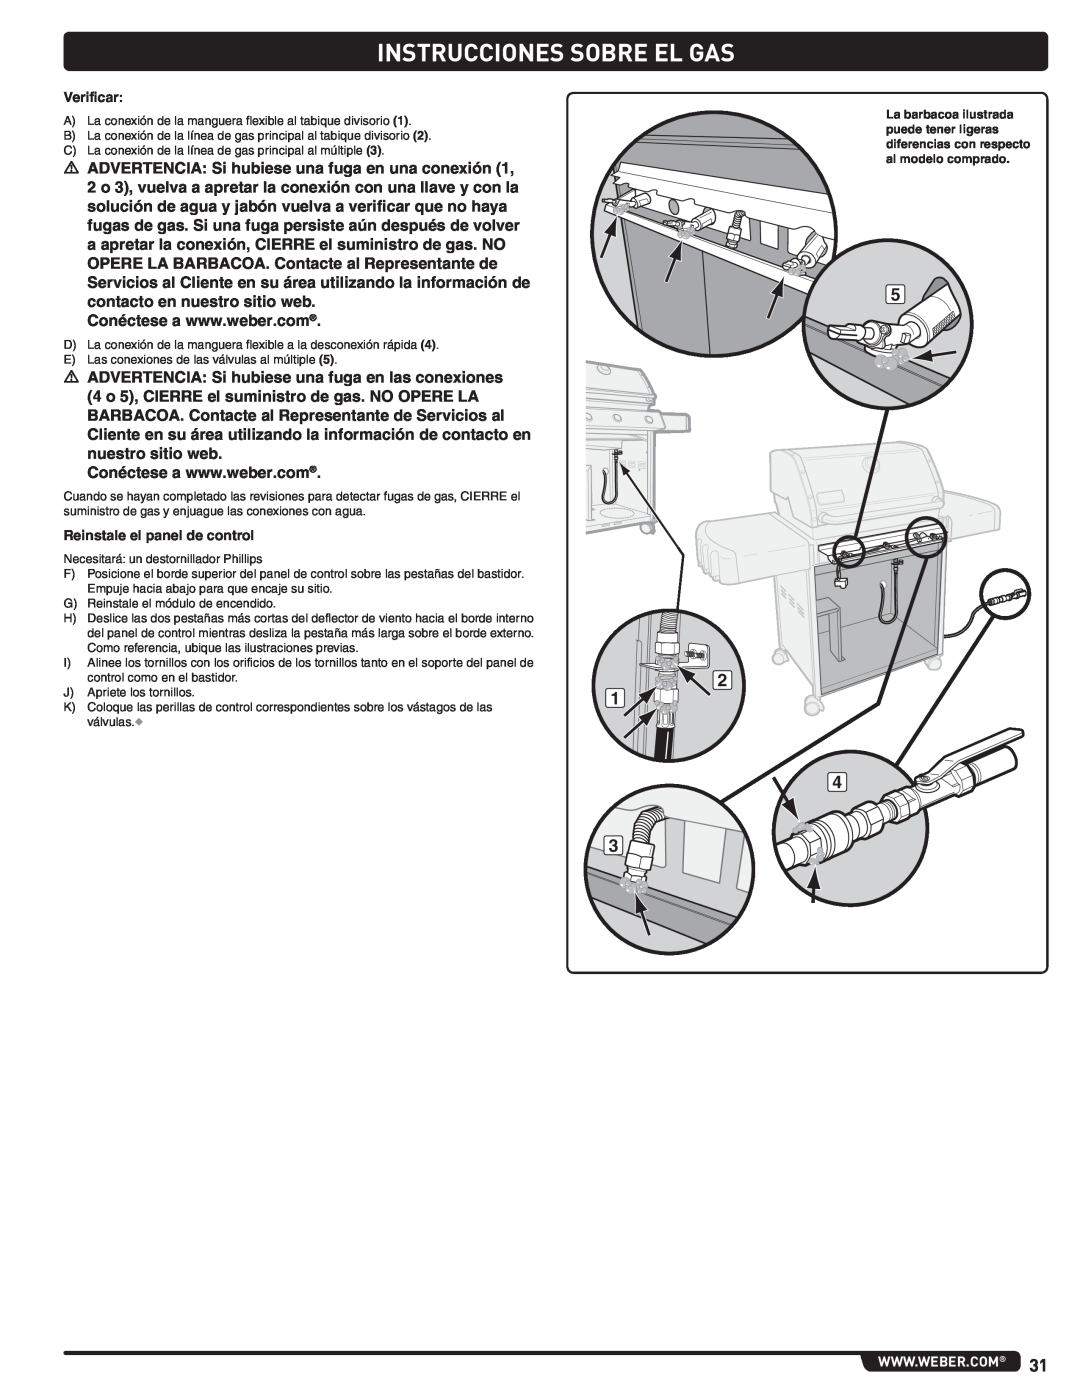 Weber 56515 manual Instrucciones Sobre El Gas, m ADVERTENCIA Si hubiese una fuga en una conexión 